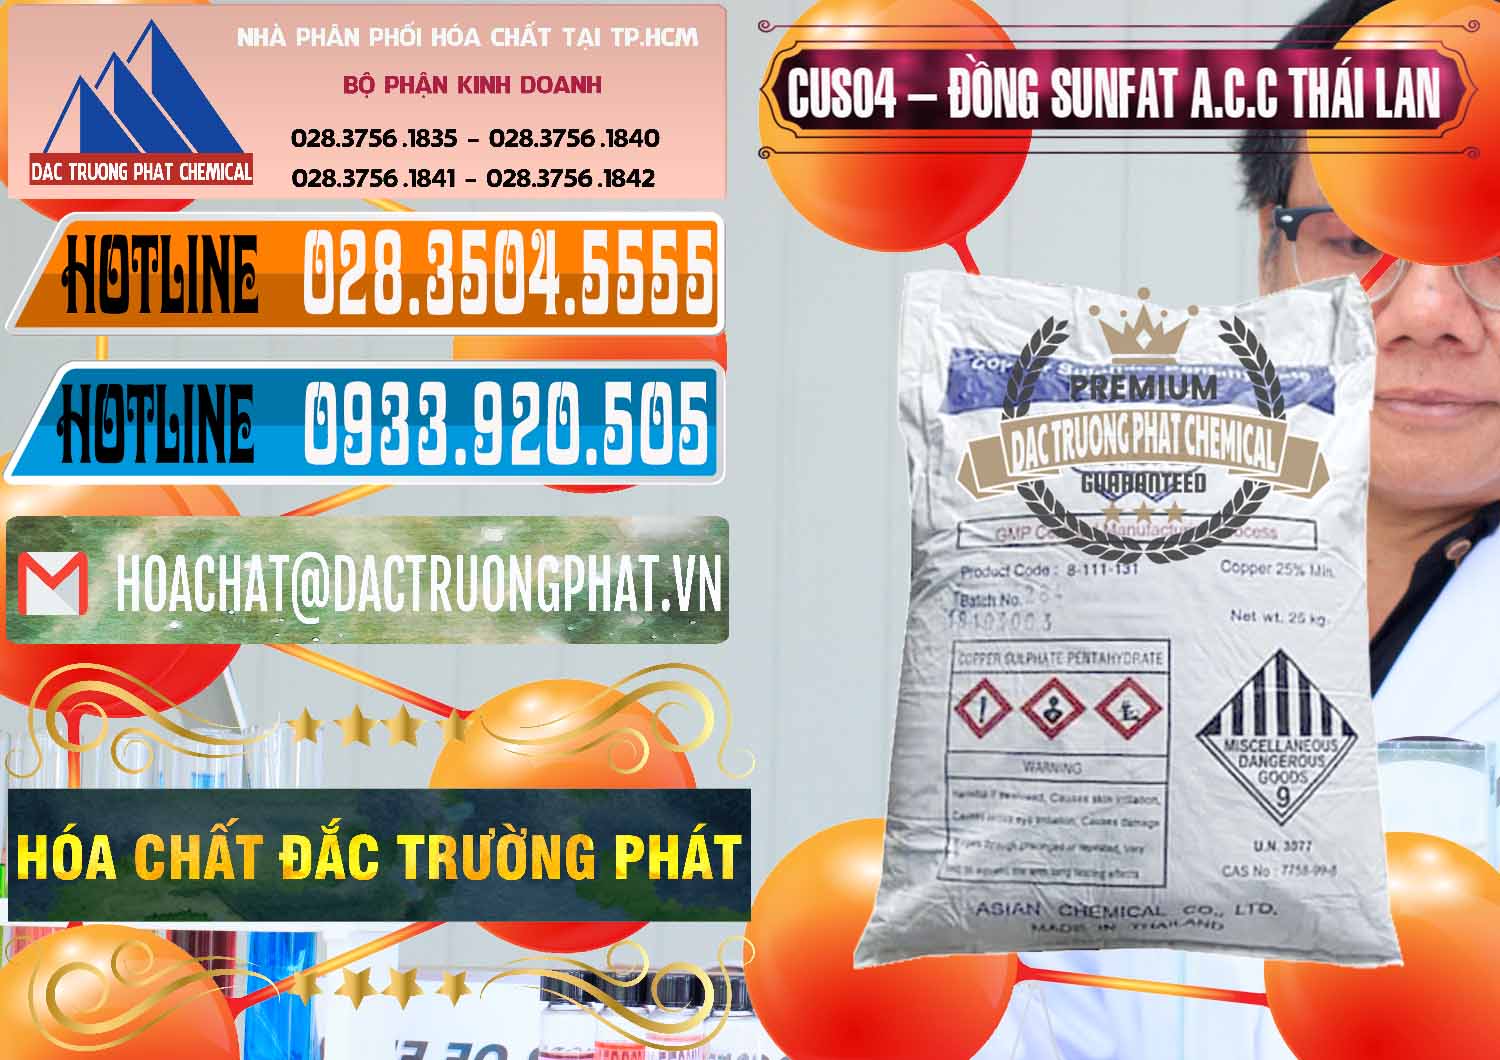 Nơi cung ứng và bán CuSO4 – Đồng Sunfat A.C.C Thái Lan - 0249 - Công ty chuyên kinh doanh và phân phối hóa chất tại TP.HCM - stmp.net